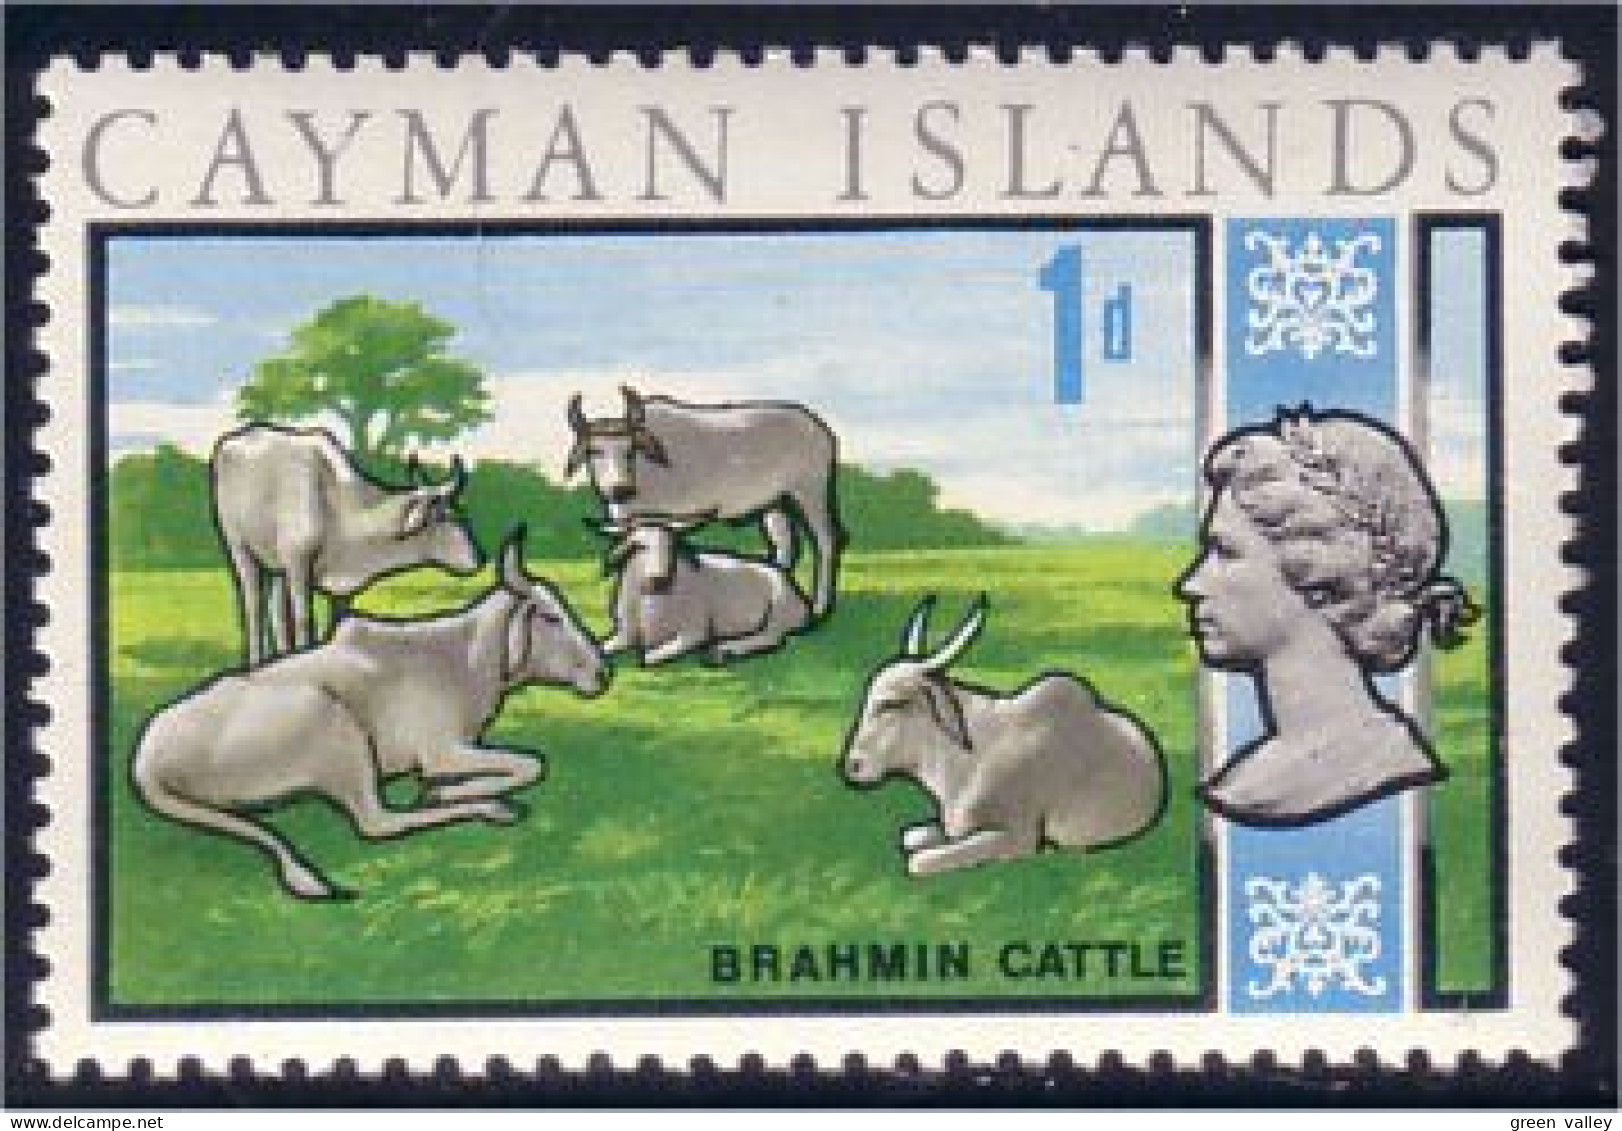 242 Cayman Cows Cattle MH * Neuf (CAY-44a) - Caimán (Islas)